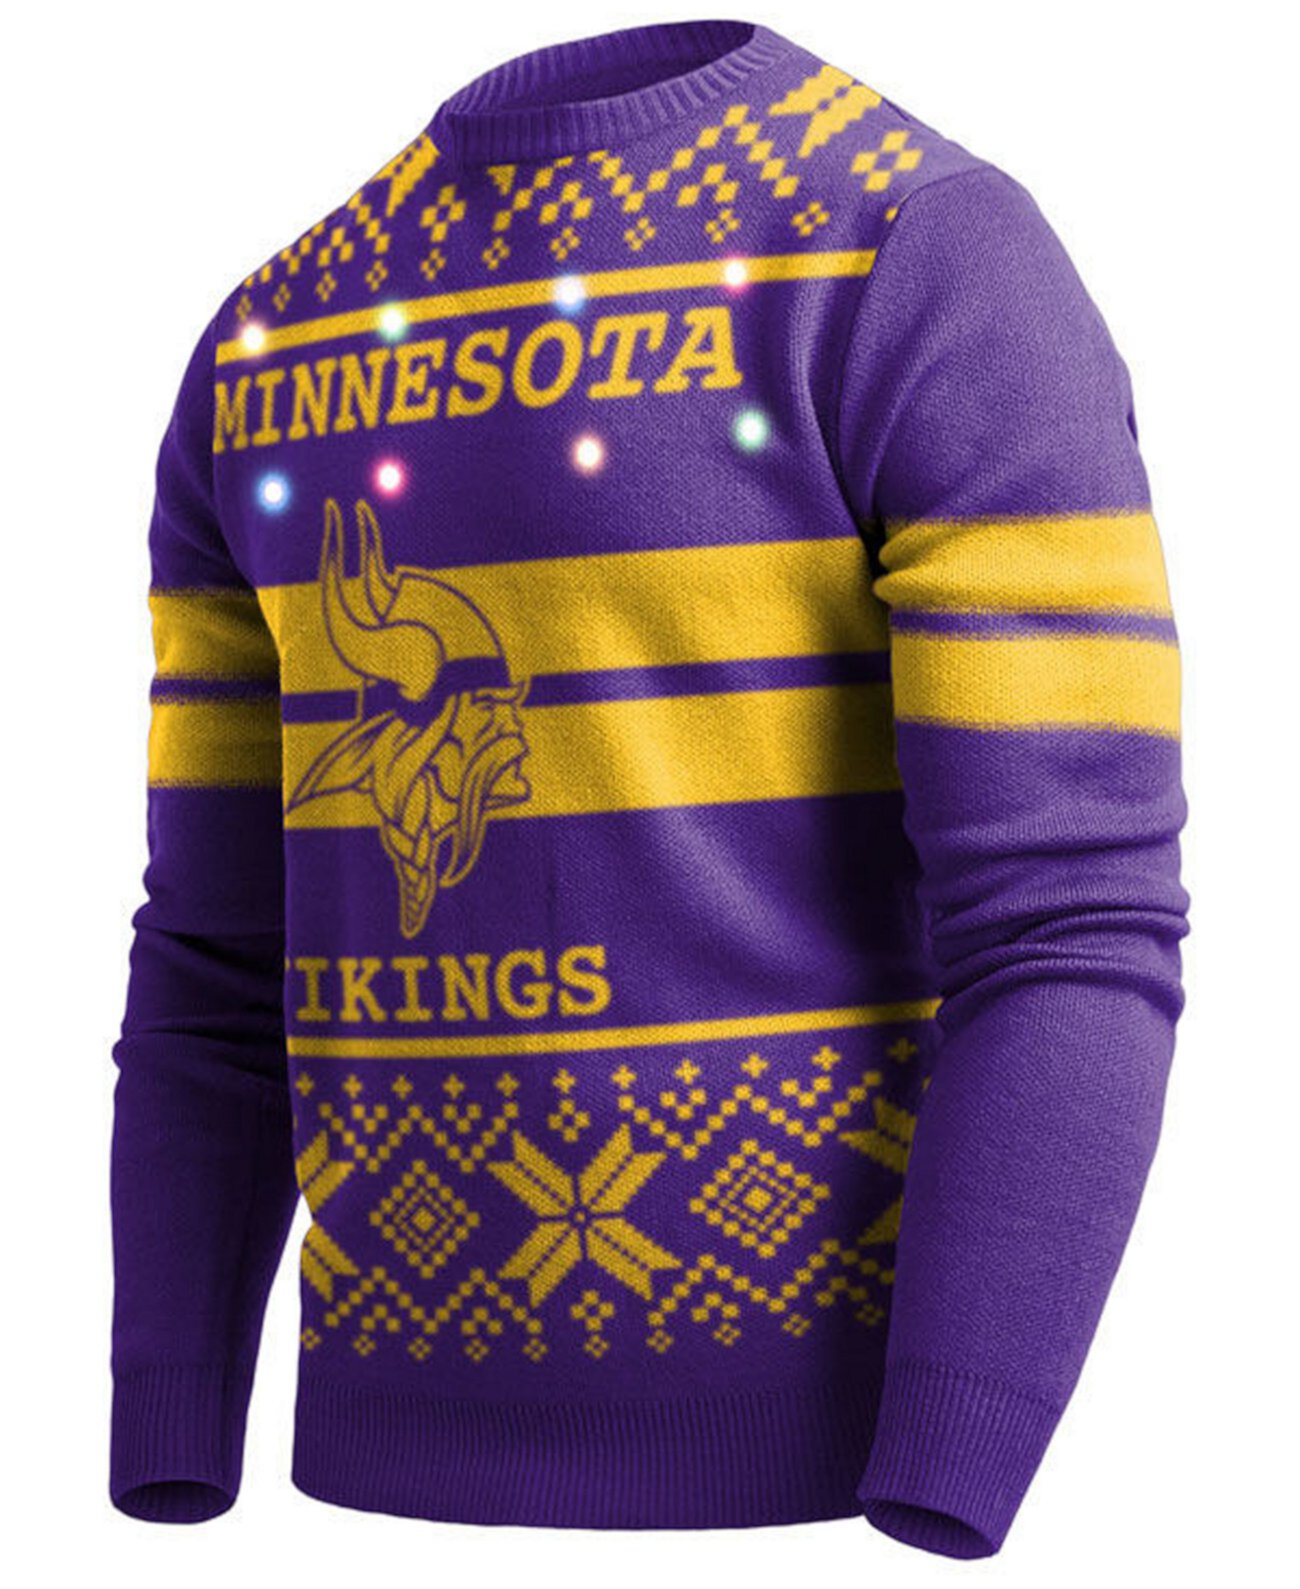 Мужской свитер Minnesota Vikings с двумя полосками и большим логотипом с подсветкой Forever Collectibles